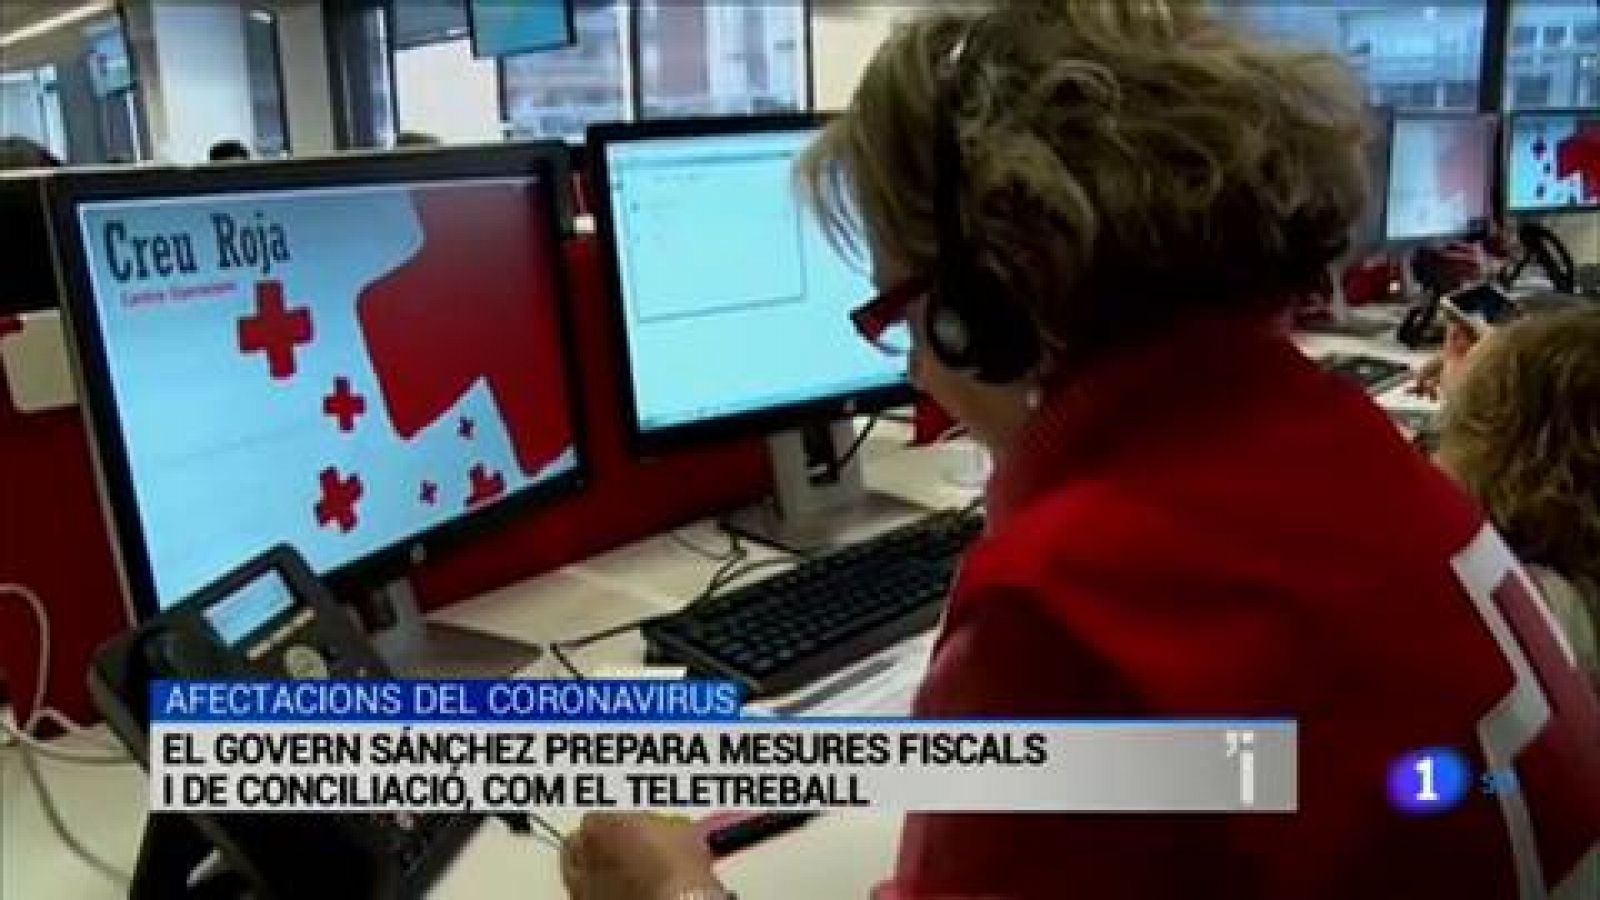 L'Informatiu | Les notícies del 10/03/2020 - RTVE.es